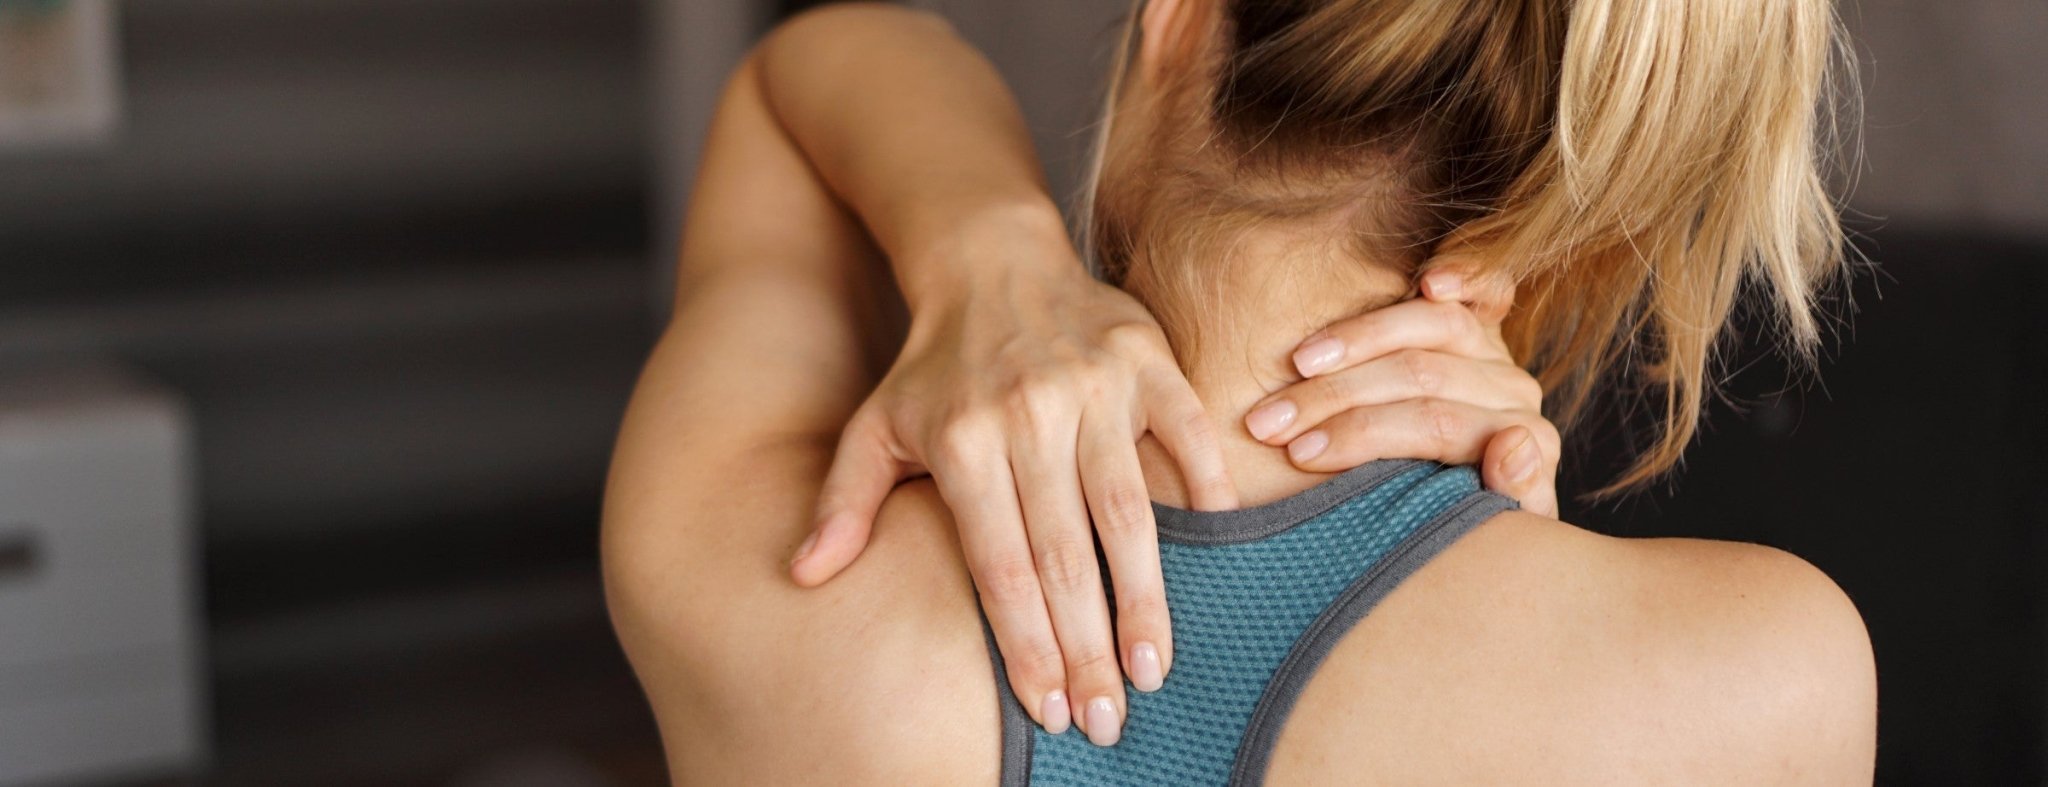 Poltrone massaggianti per sportivi attivi | Mondo delle poltrone massaggianti